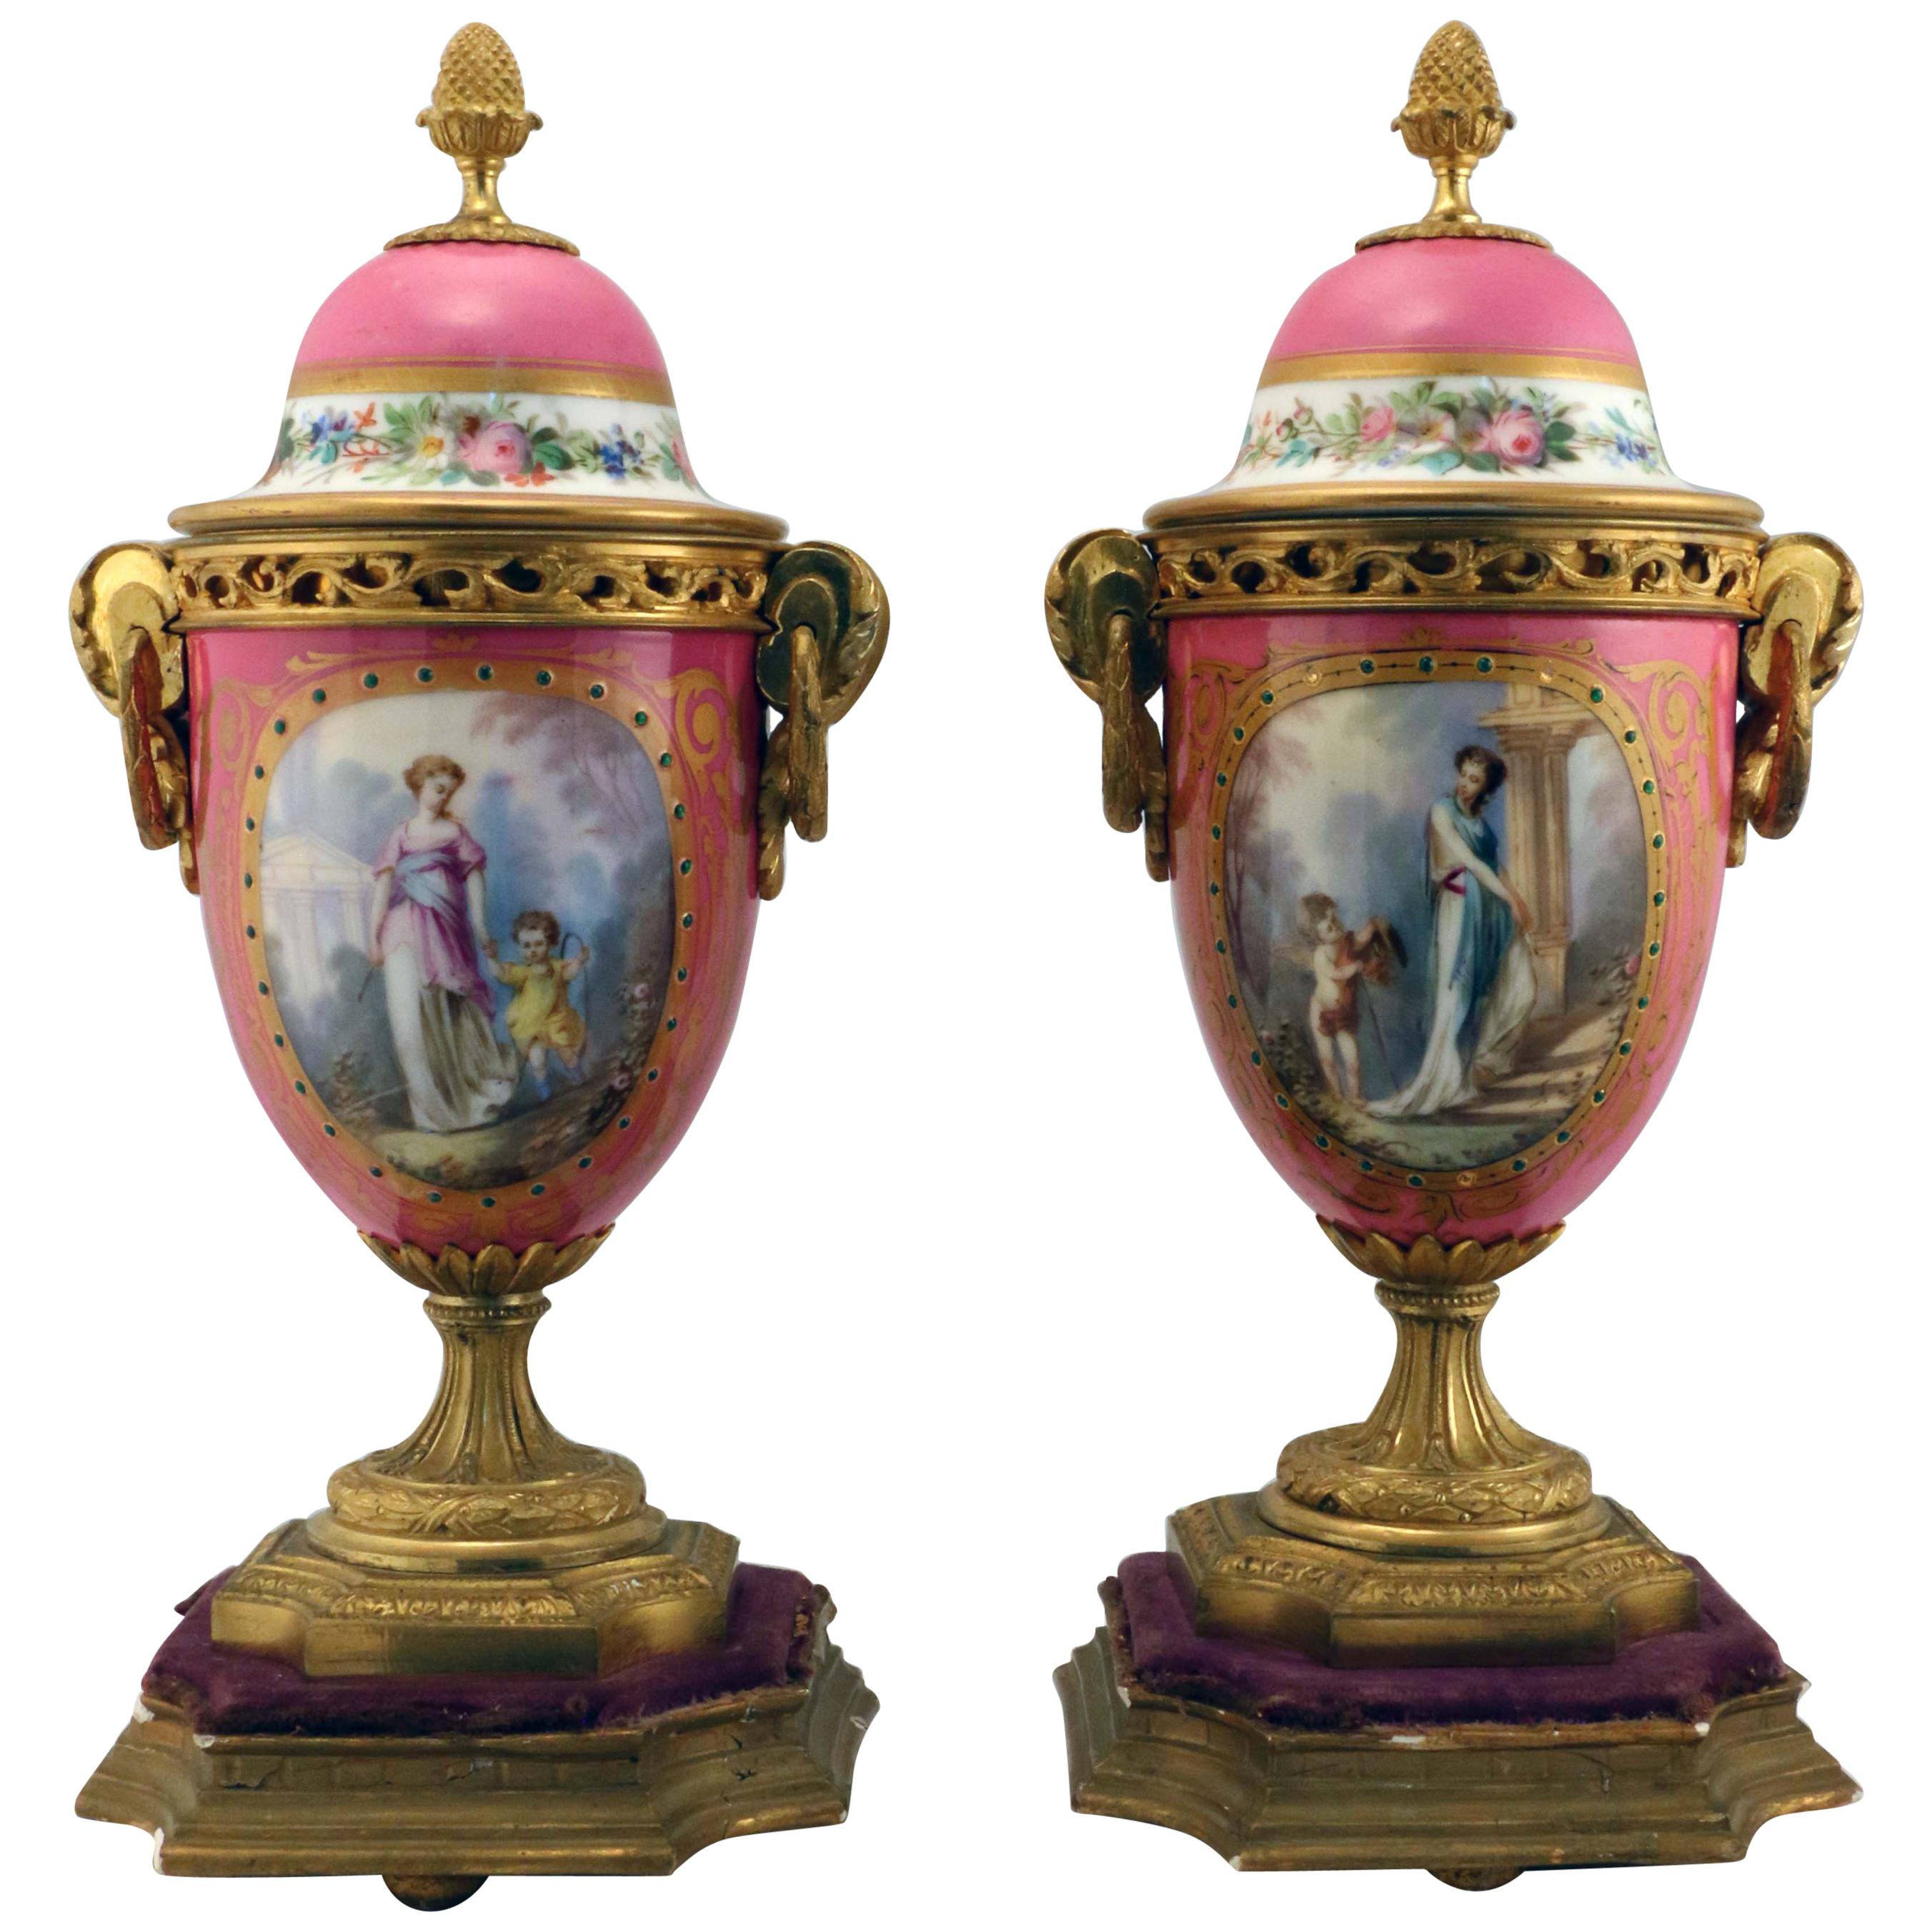 Paar vergoldete Bronze-Urnen im Louis XV-Stil mit rosafarbenem Porzellanüberzug